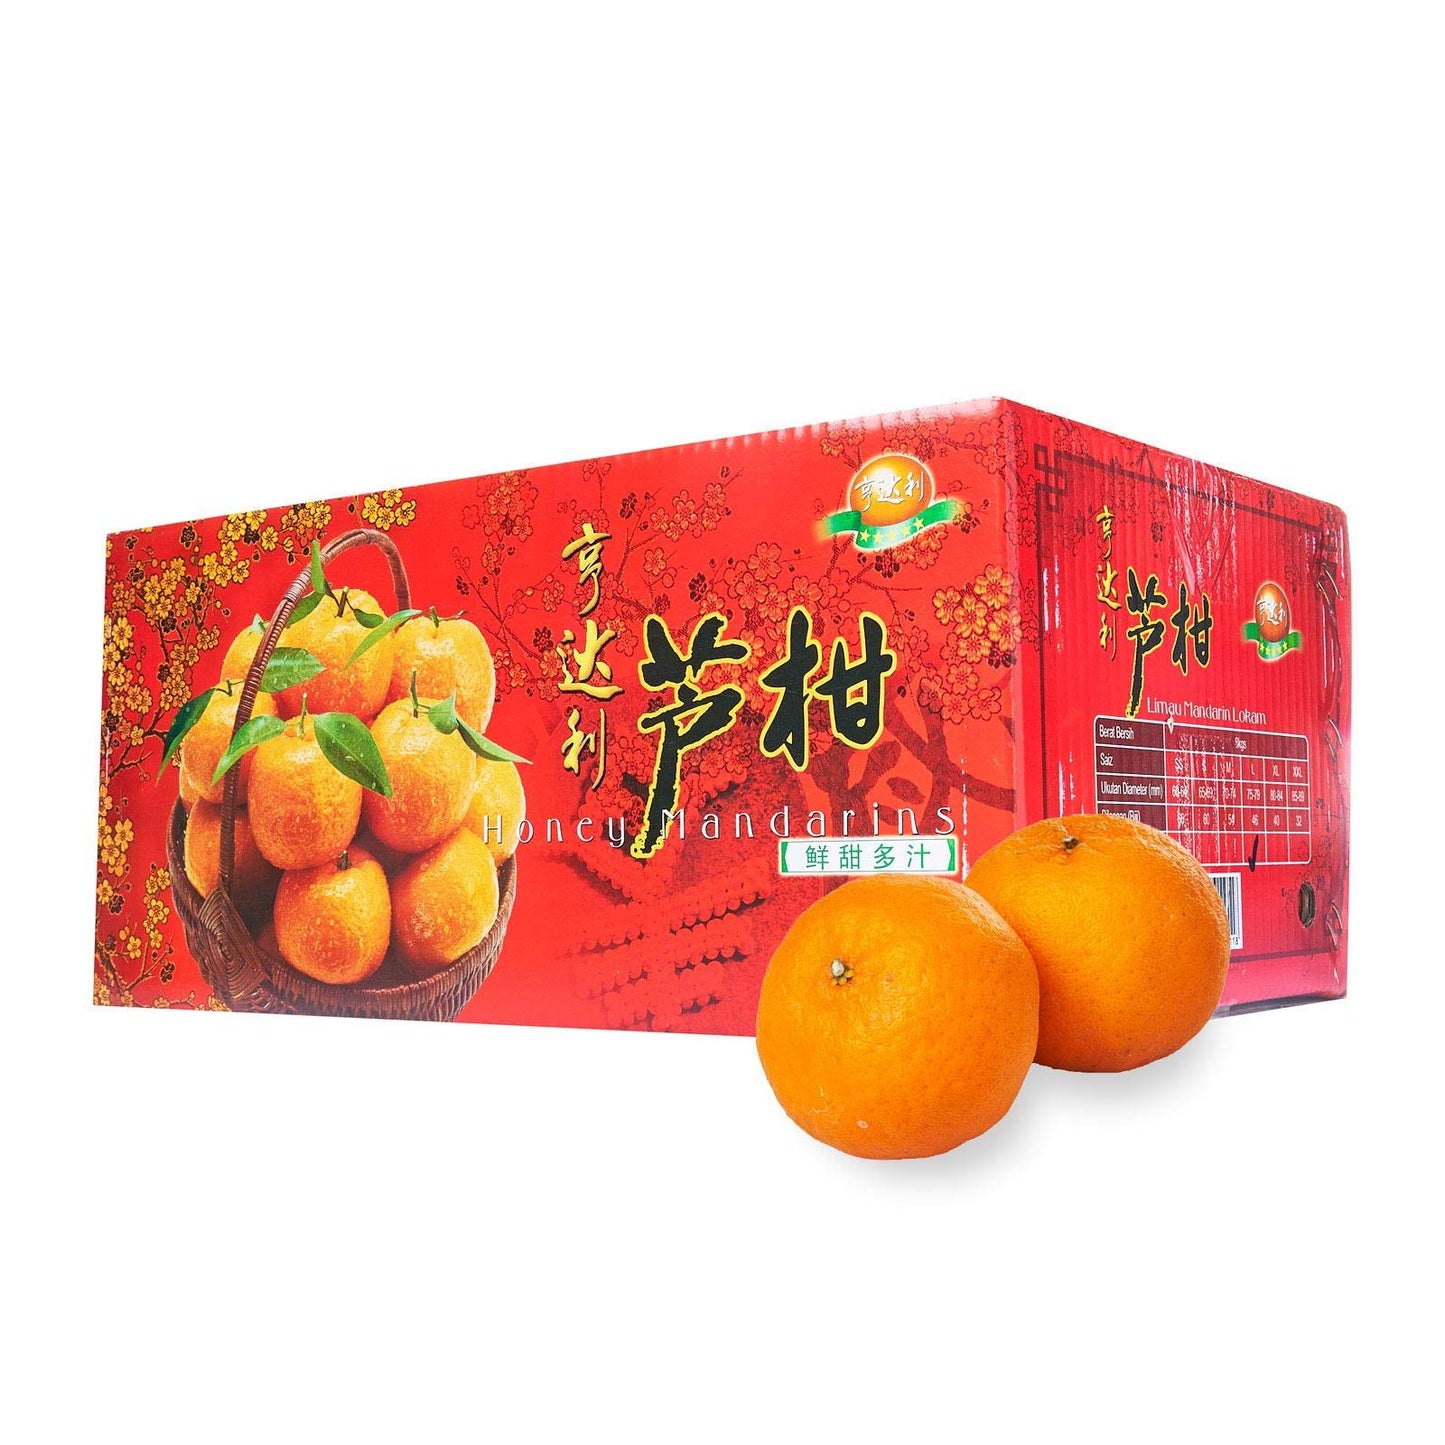 Premium Mandarin Oranges